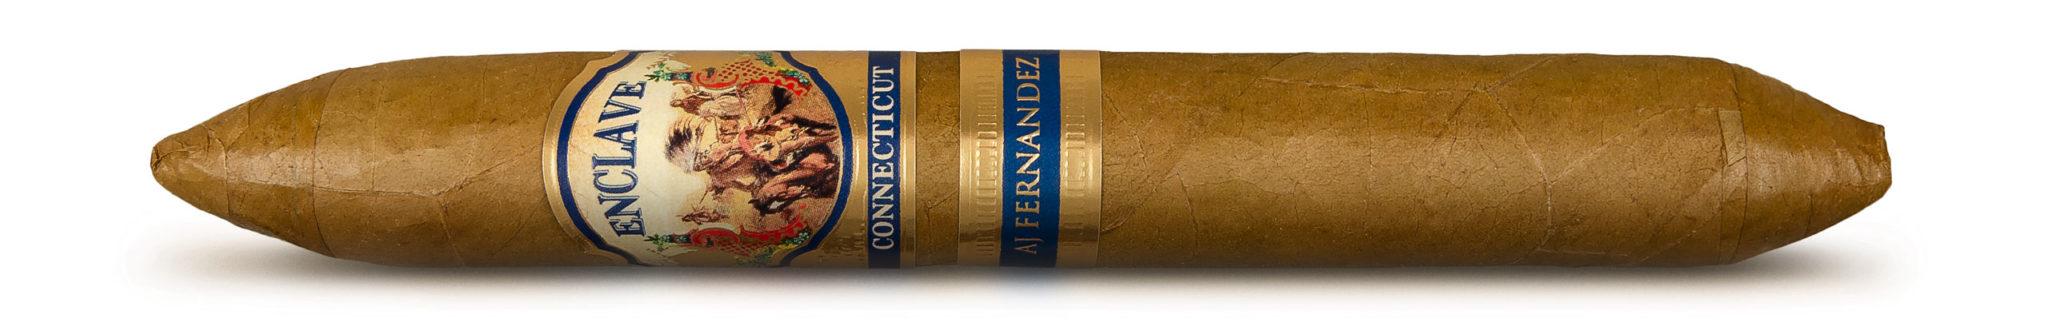 Сигара №9 2022 года по версии Cigarjournal — A.J. FERNANDEZ ENCLAVE CONNECTICUT FIGURADO